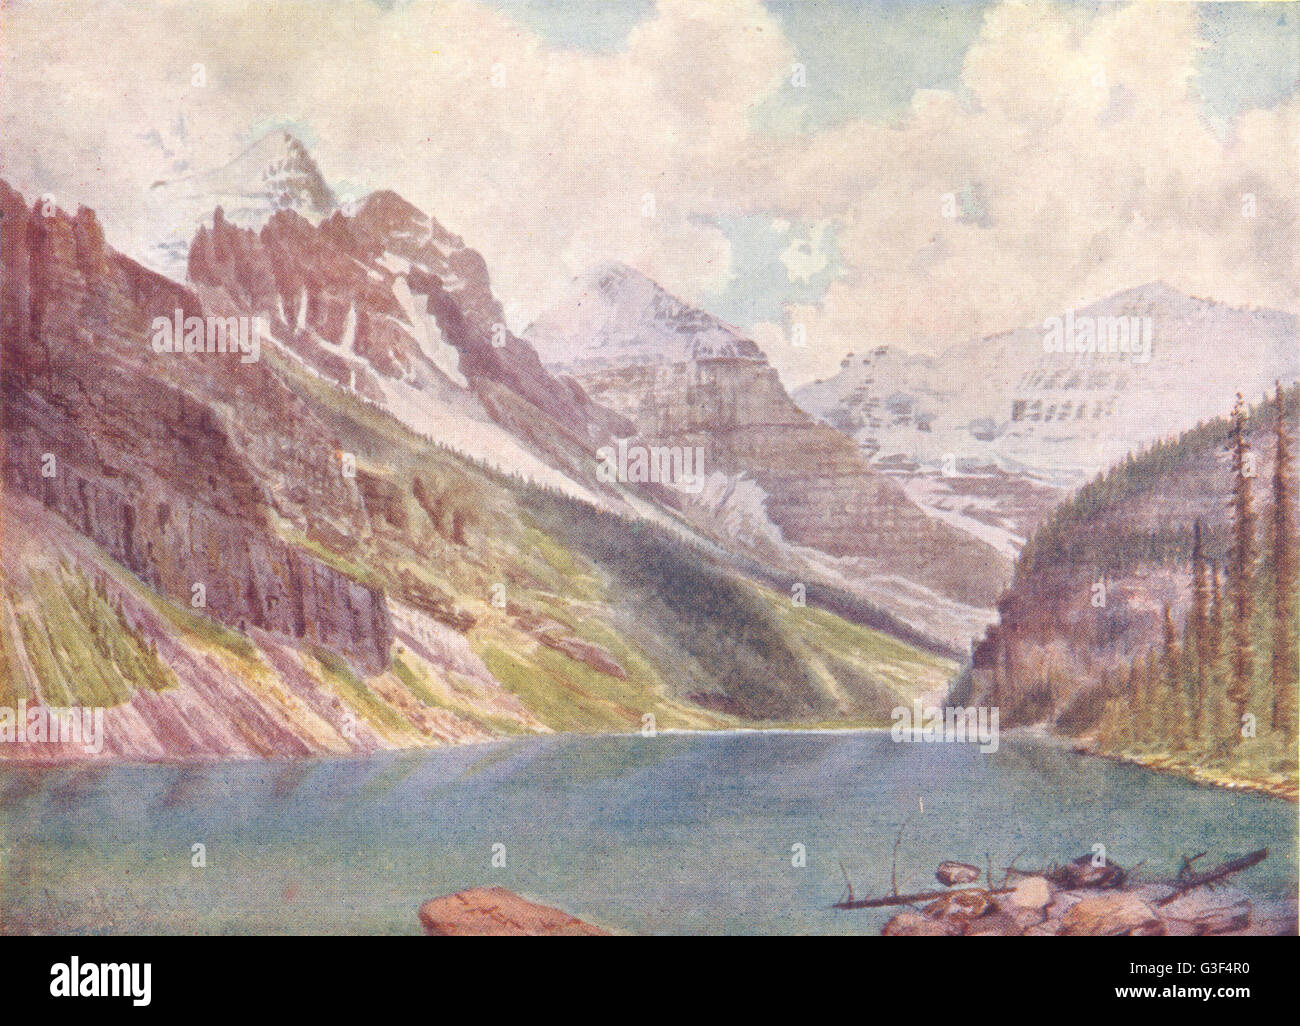 Kanada: Reittiere Aberdeen, Lefroy und Victoria am Lake Louise, alten Drucken 1907 Stockfoto